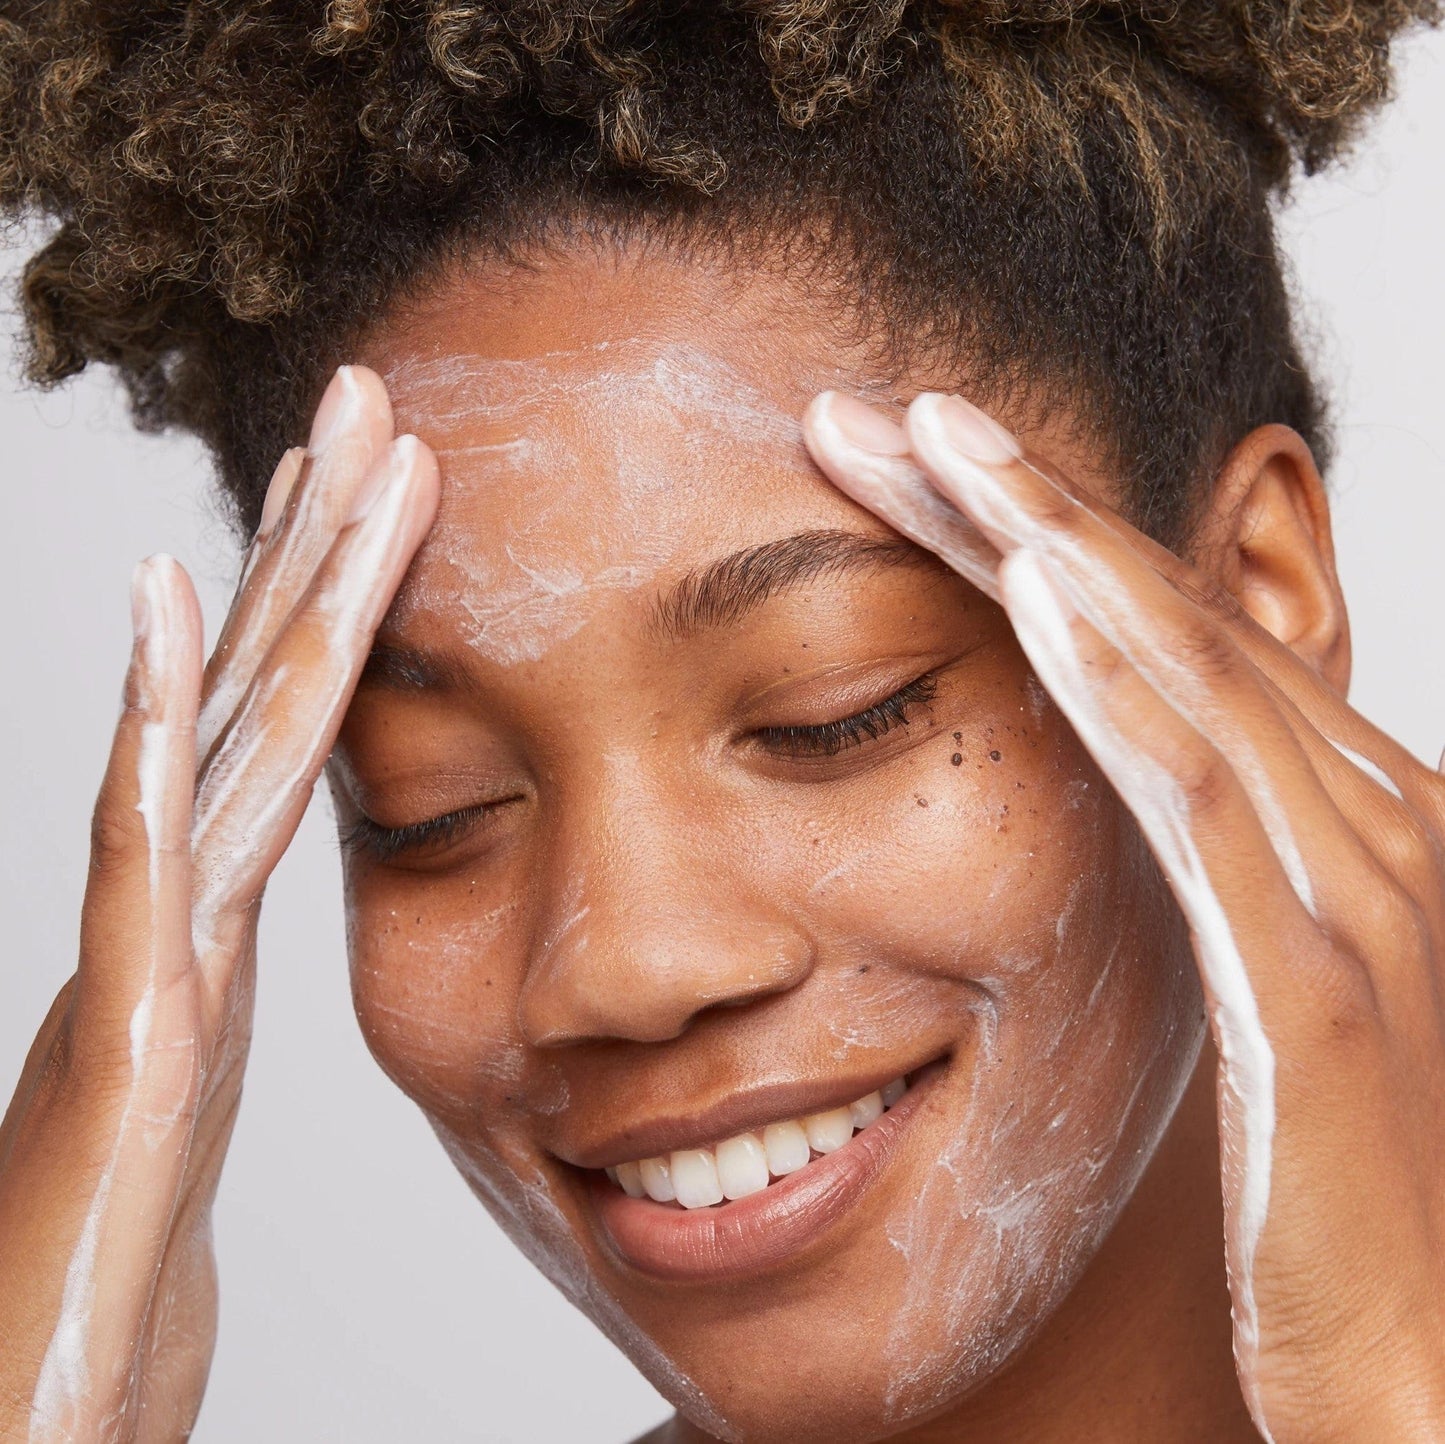 Eine Frau verwendet sanft das Daily Microfoliant 13g | Gesichtspeeling im Gesicht, um einen Peeling-Effekt zu erzielen.